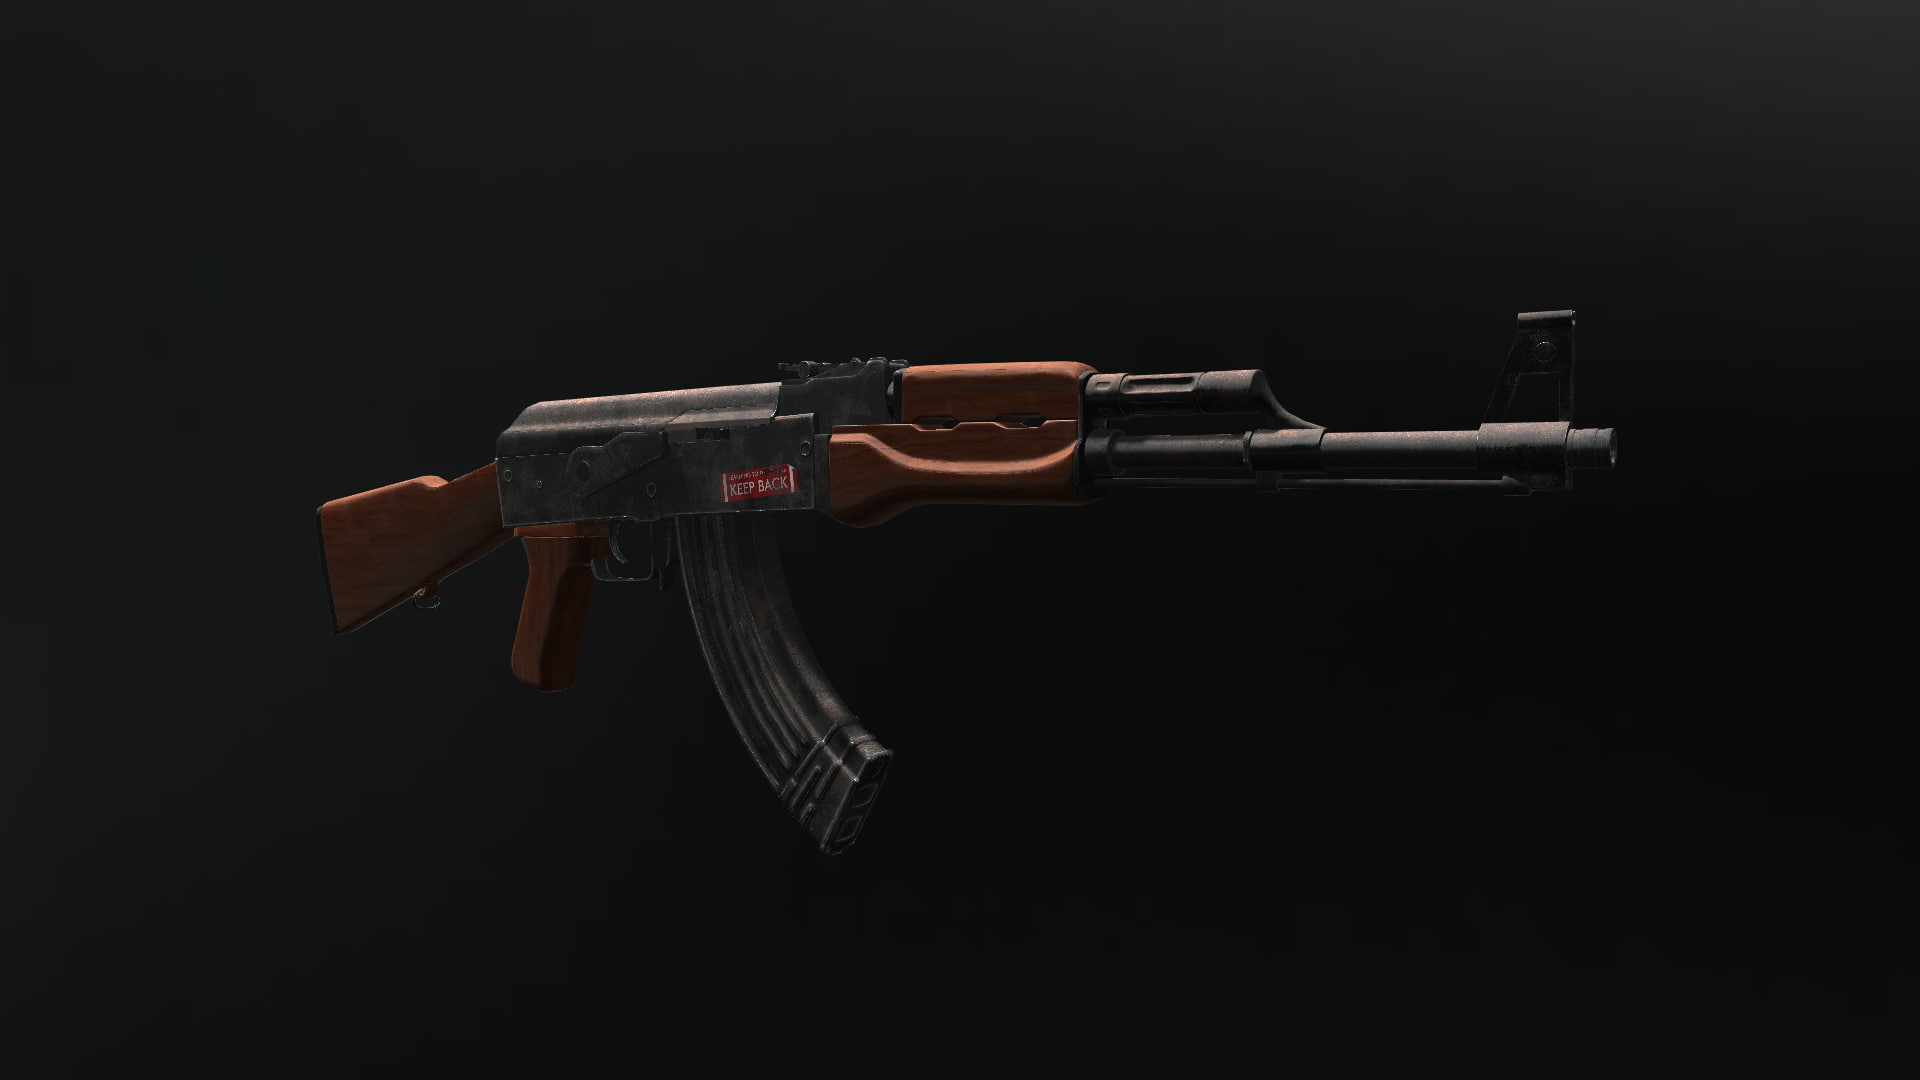 3D, AK-47, gun, weapon, studio shot, black background, single object